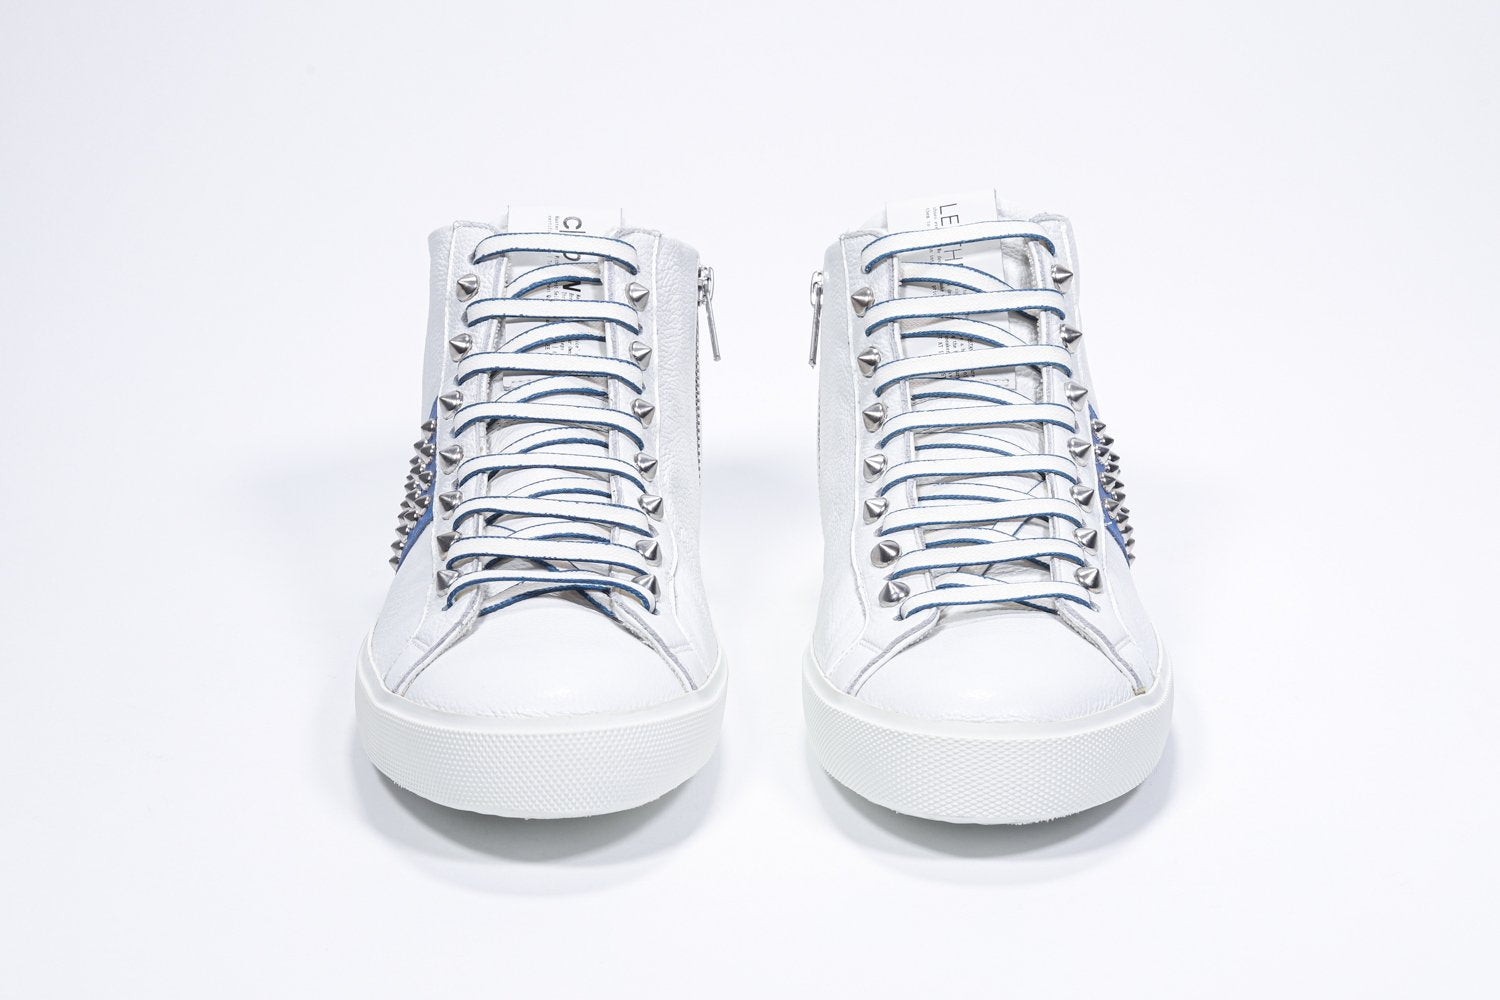 Vue de face du modèle mid top blanc et bleu royal sneaker. Tige en cuir avec clous, fermeture à glissière intérieure et semelle en caoutchouc blanc.